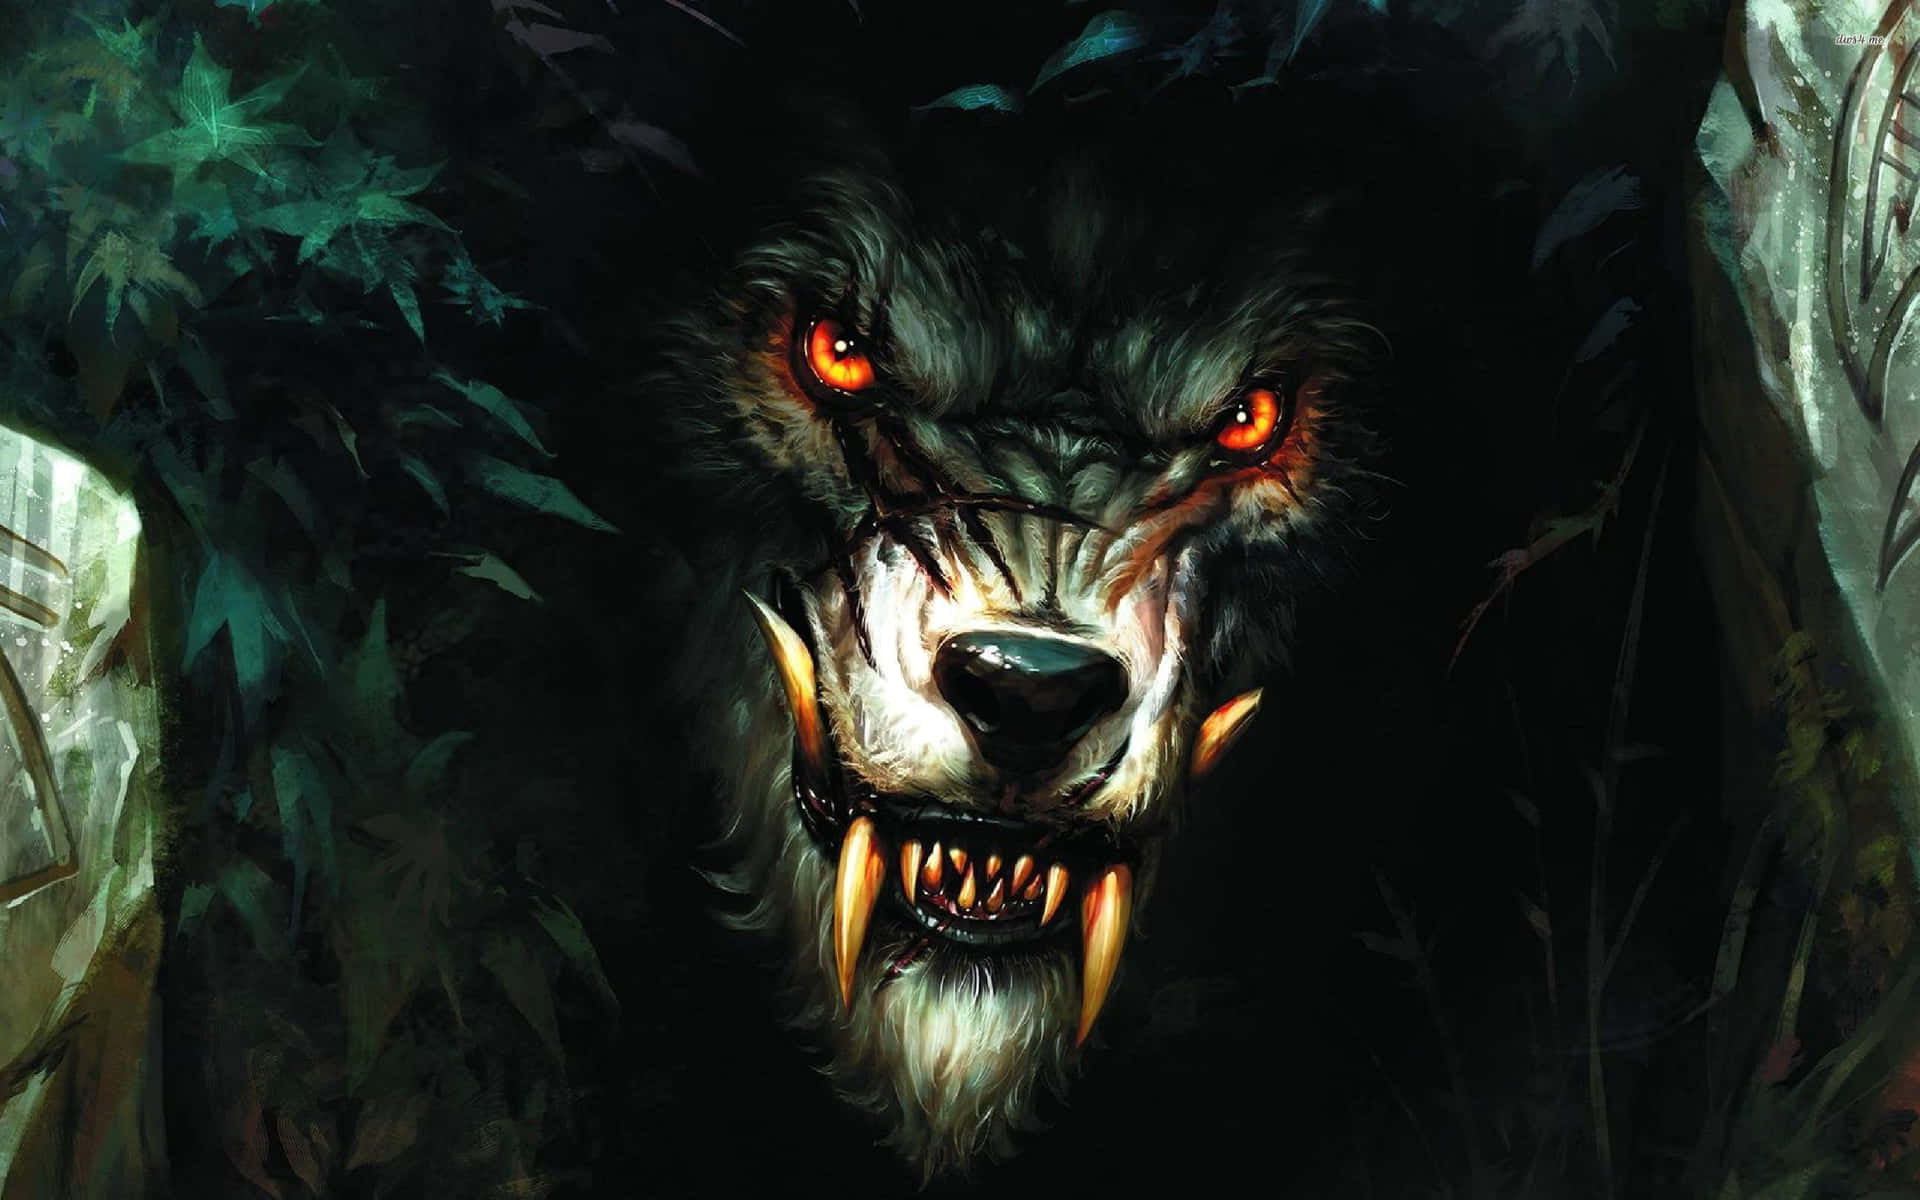 Derfurchterregende Werwolf Lauert In Der Dunkelheit.